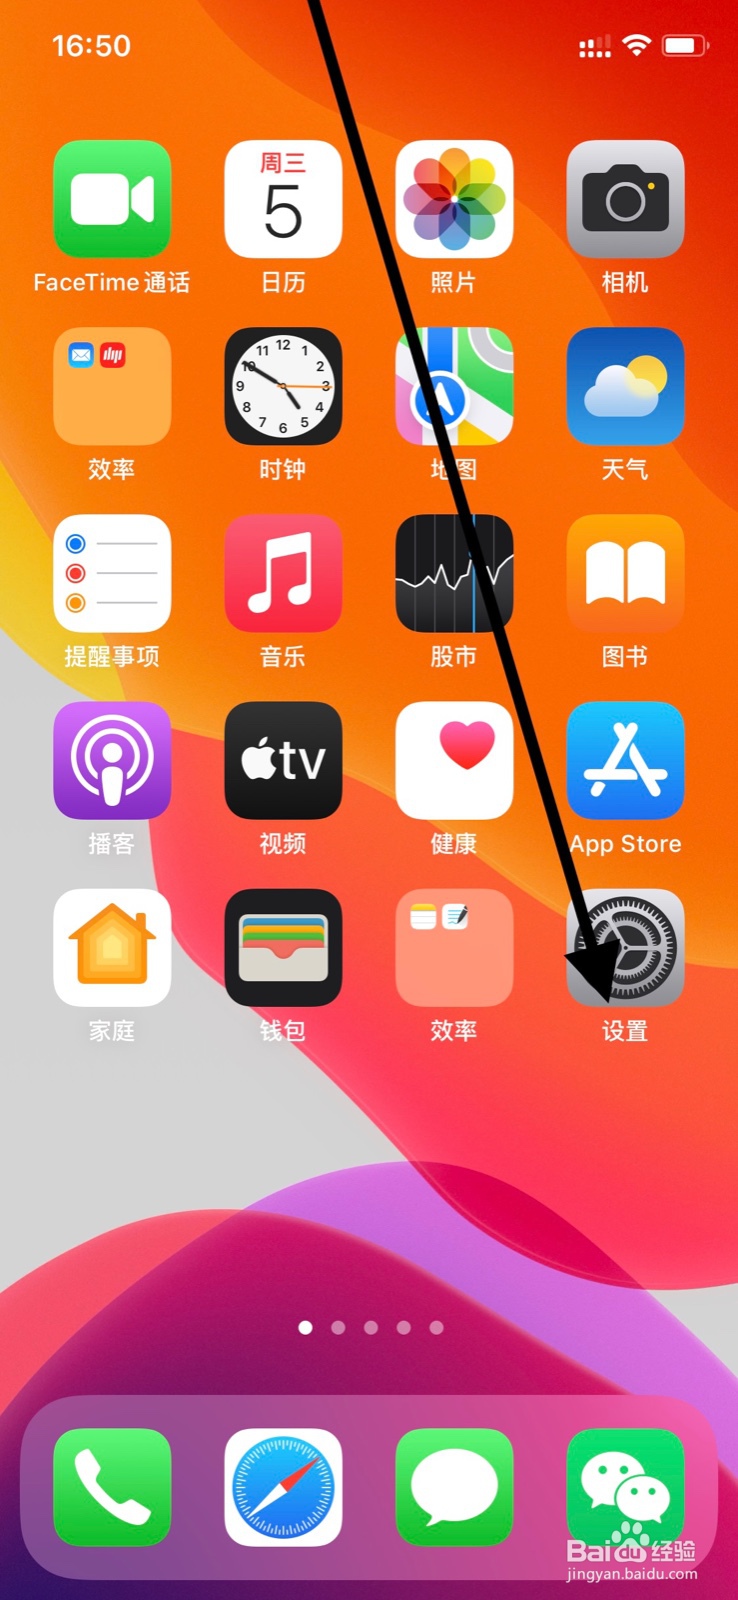 <b>iPhone后台允许“岭南通”app刷新内容</b>